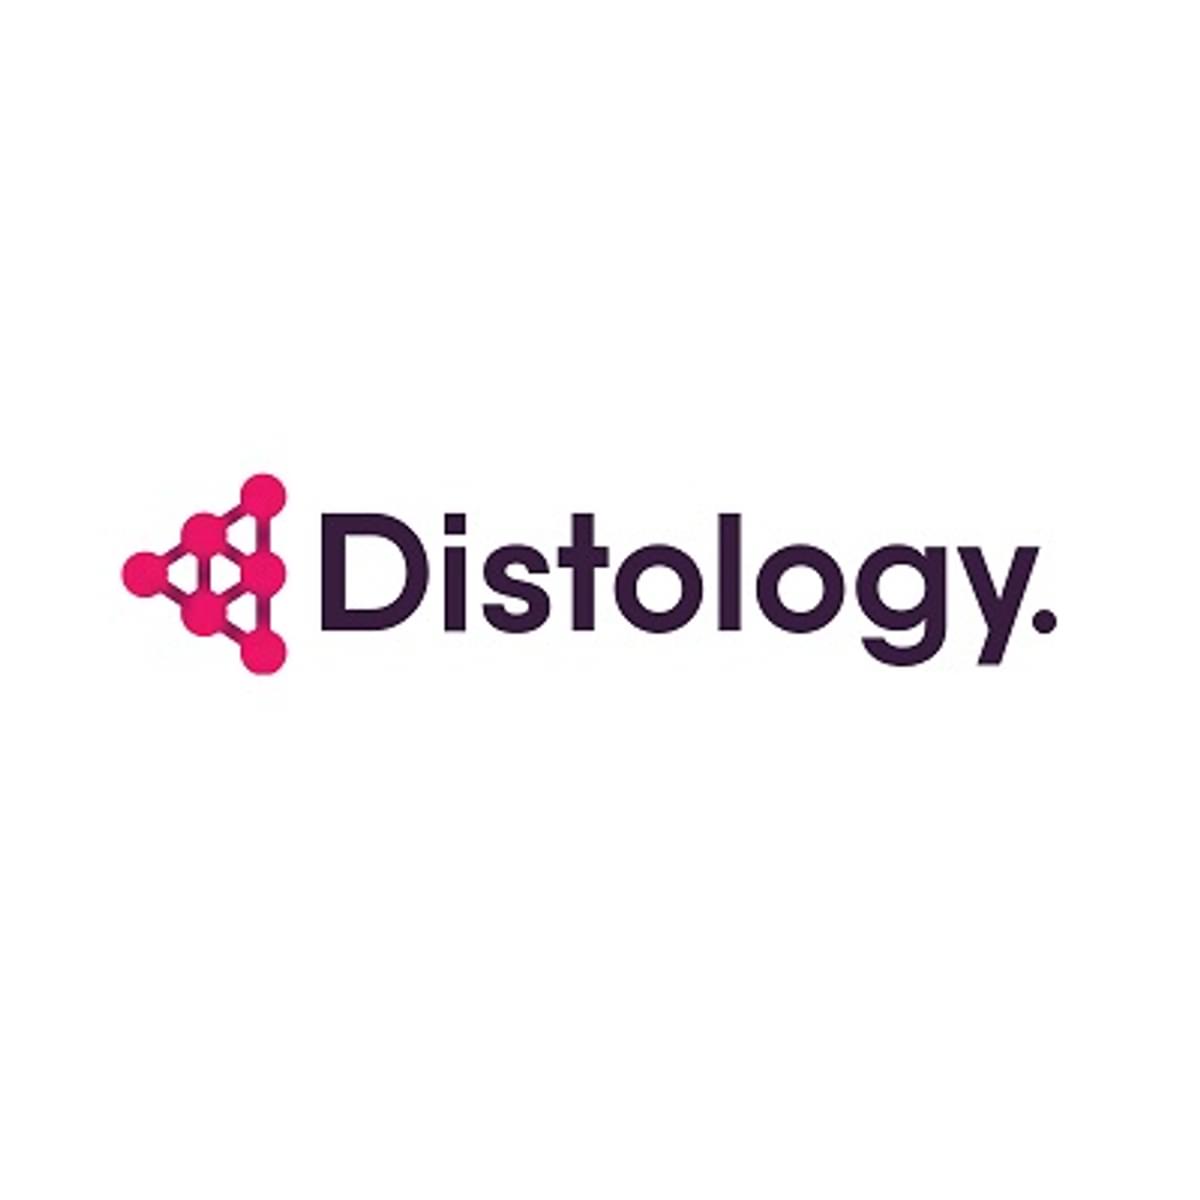 Distology kondigt een nieuwe samenwerking aan met Encore image